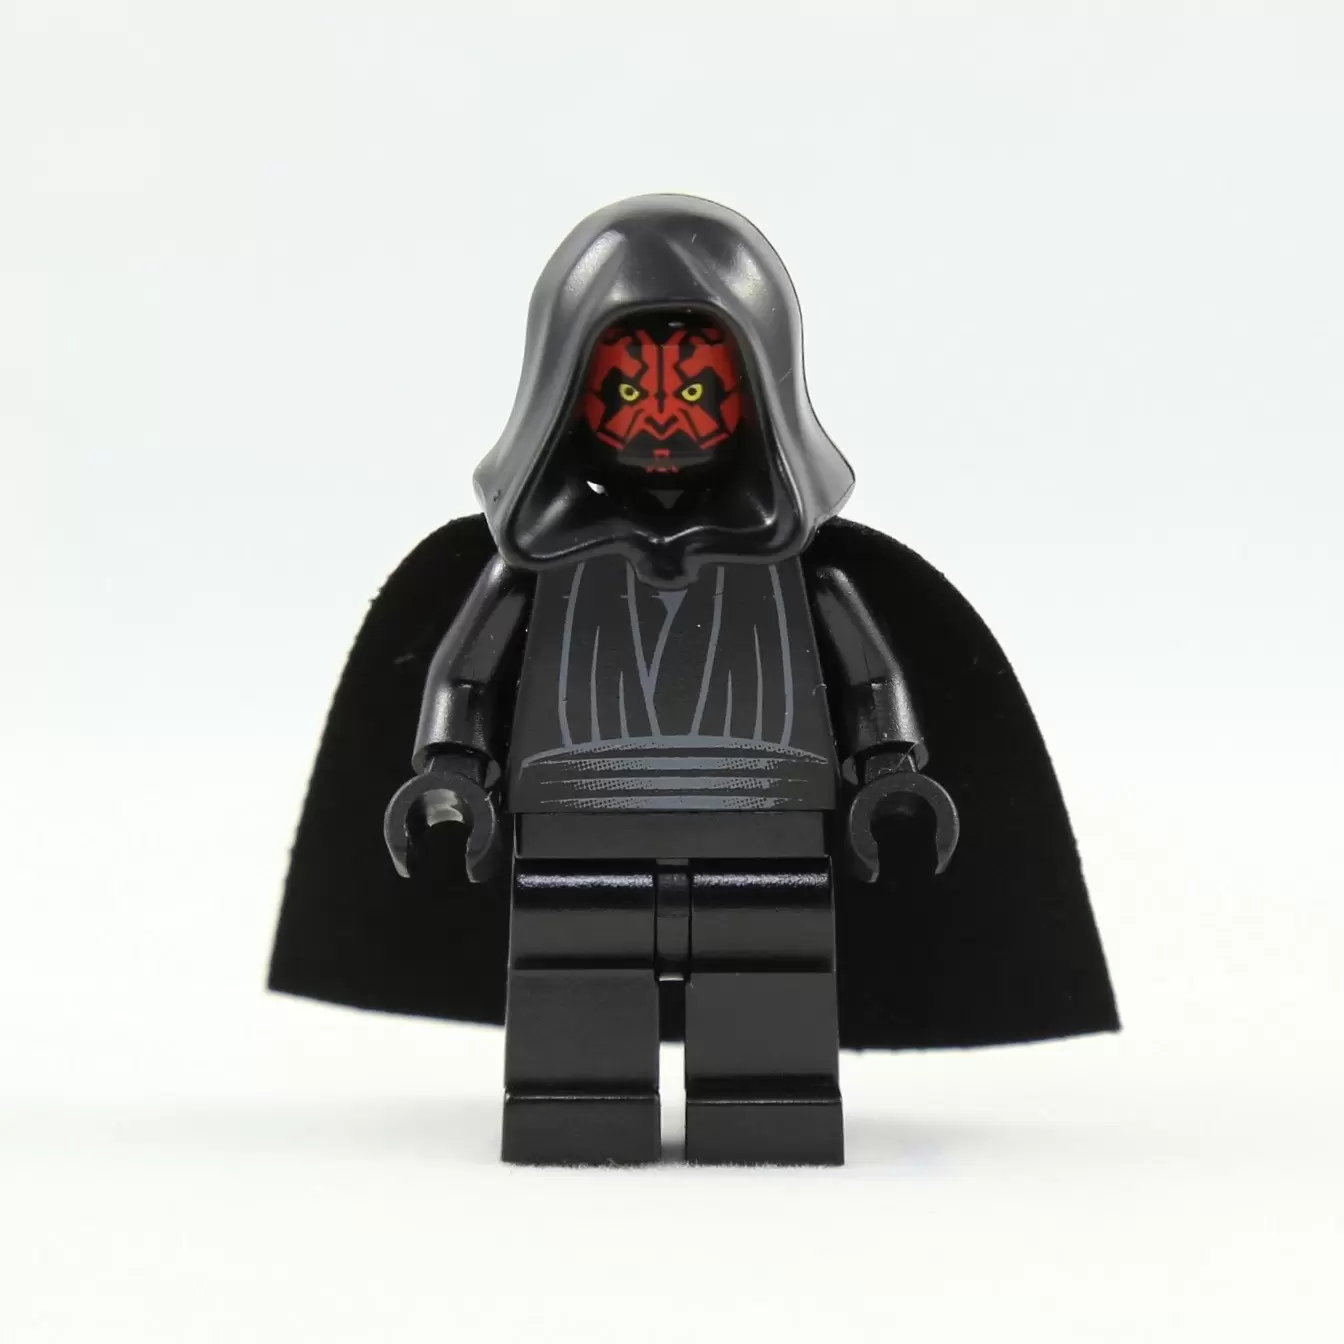 LEGO Star Wars Minifigs - Darth Maul